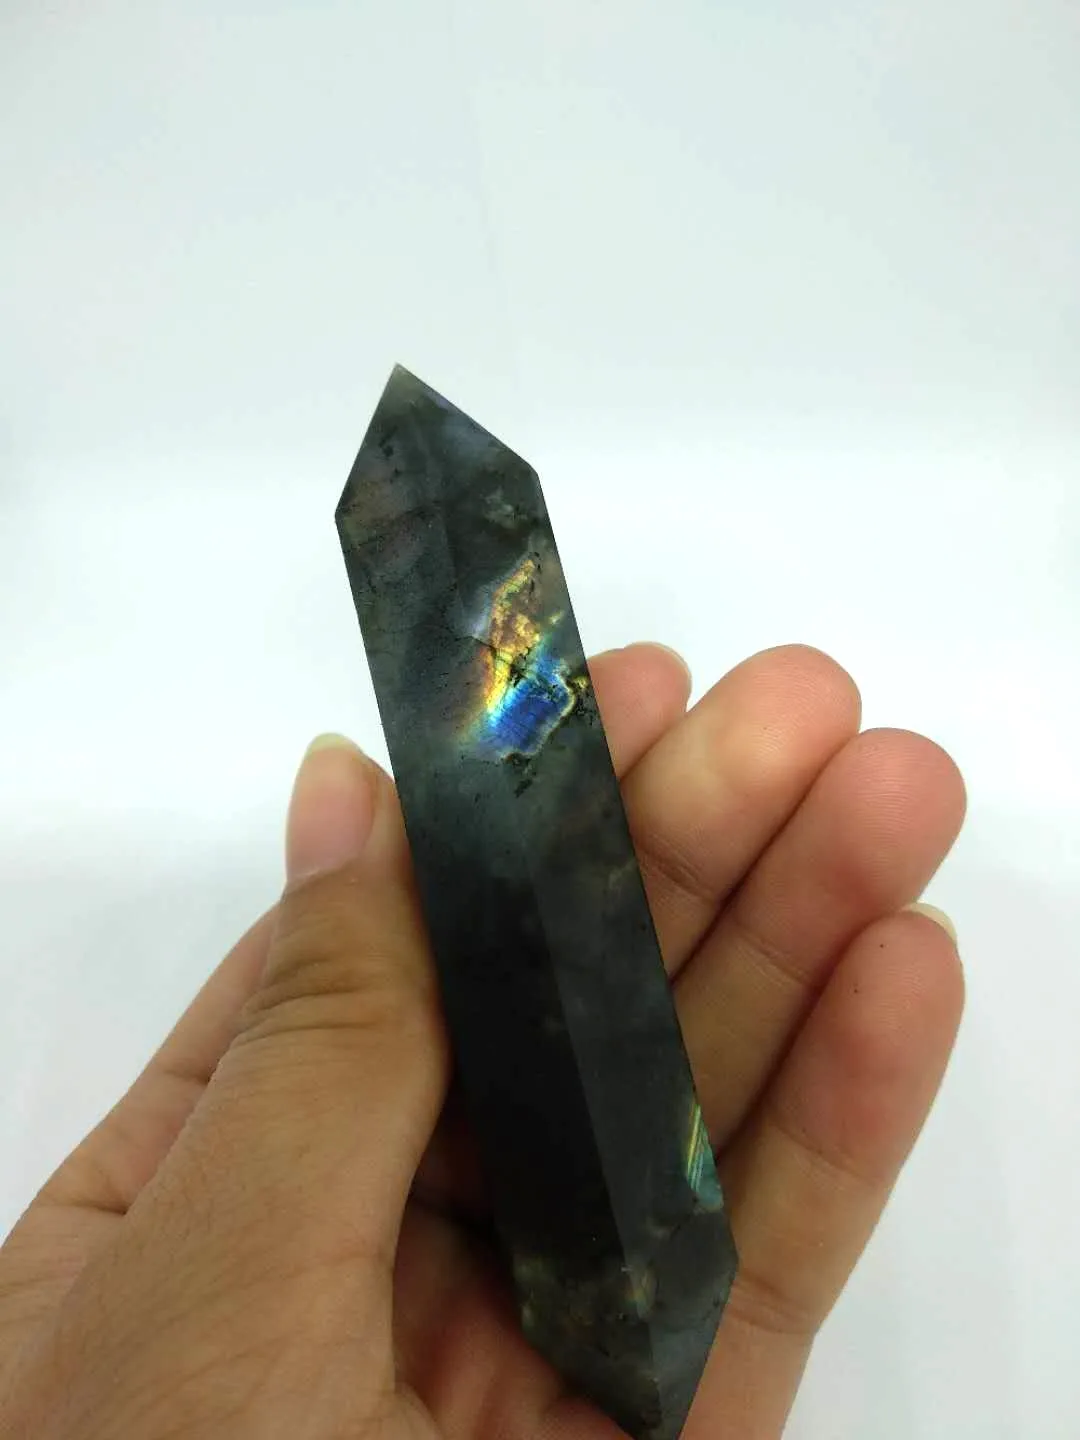 Högkvalitativ Naturlig Labradorite Quartz Crystal Double Terminated Wand Healing Natural Stones och Minerals för julklapp Gratis frakt